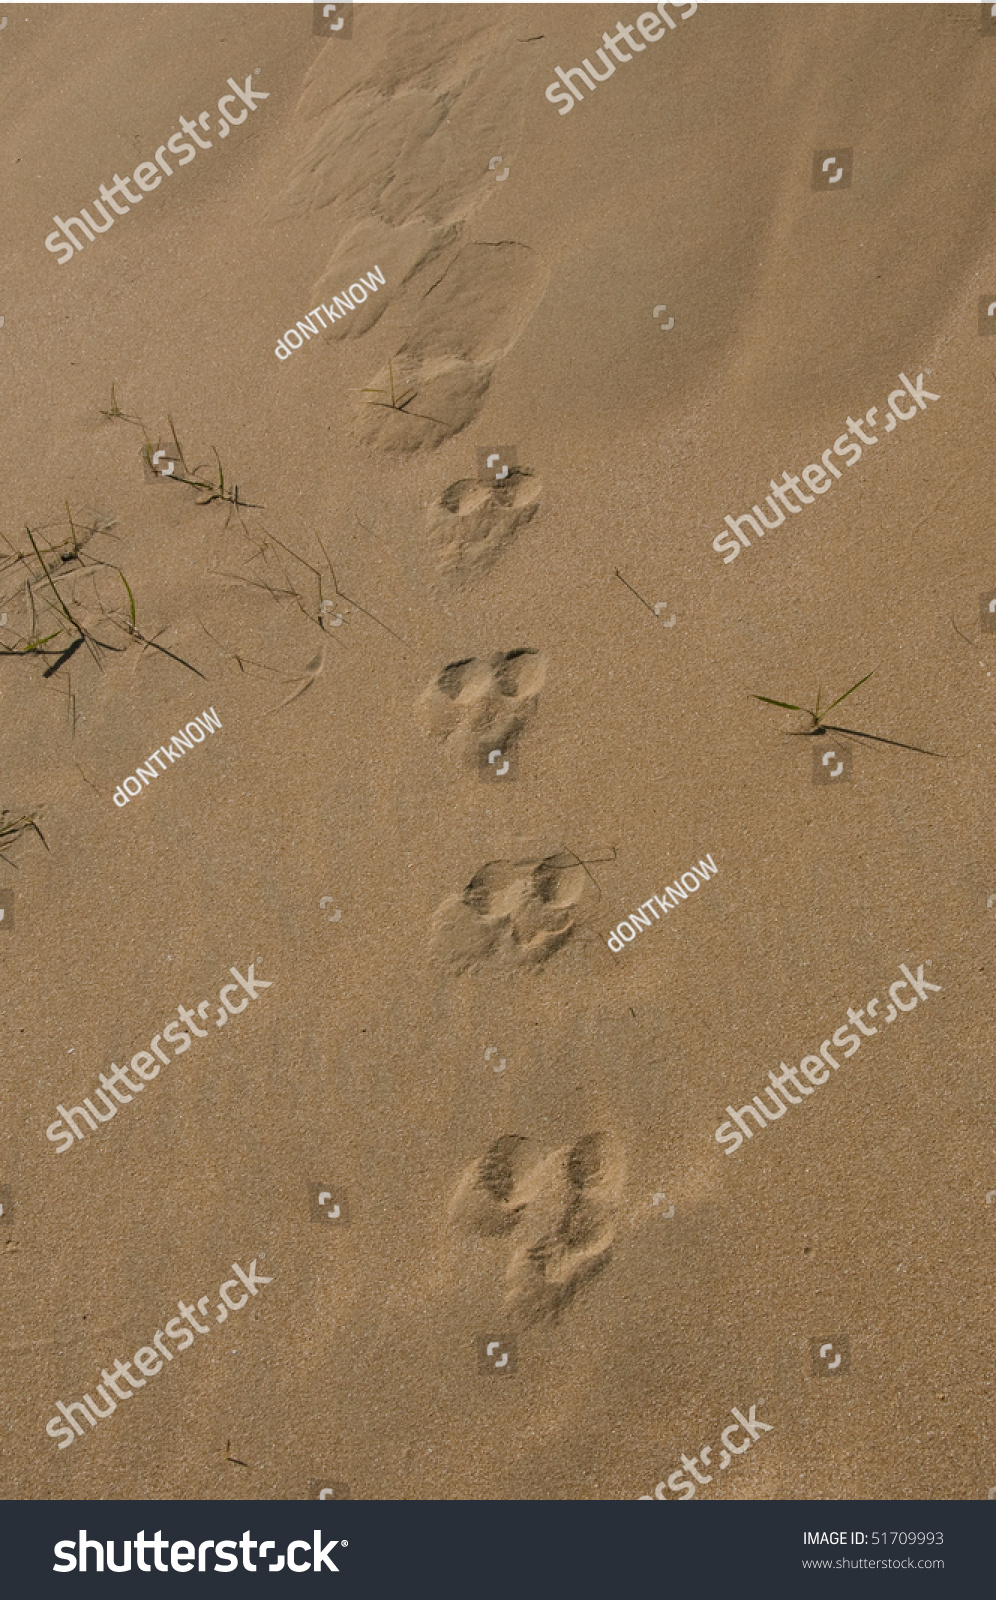 Rabbit Footprints On Sand Stock Photo 51709993 : Shutterstock